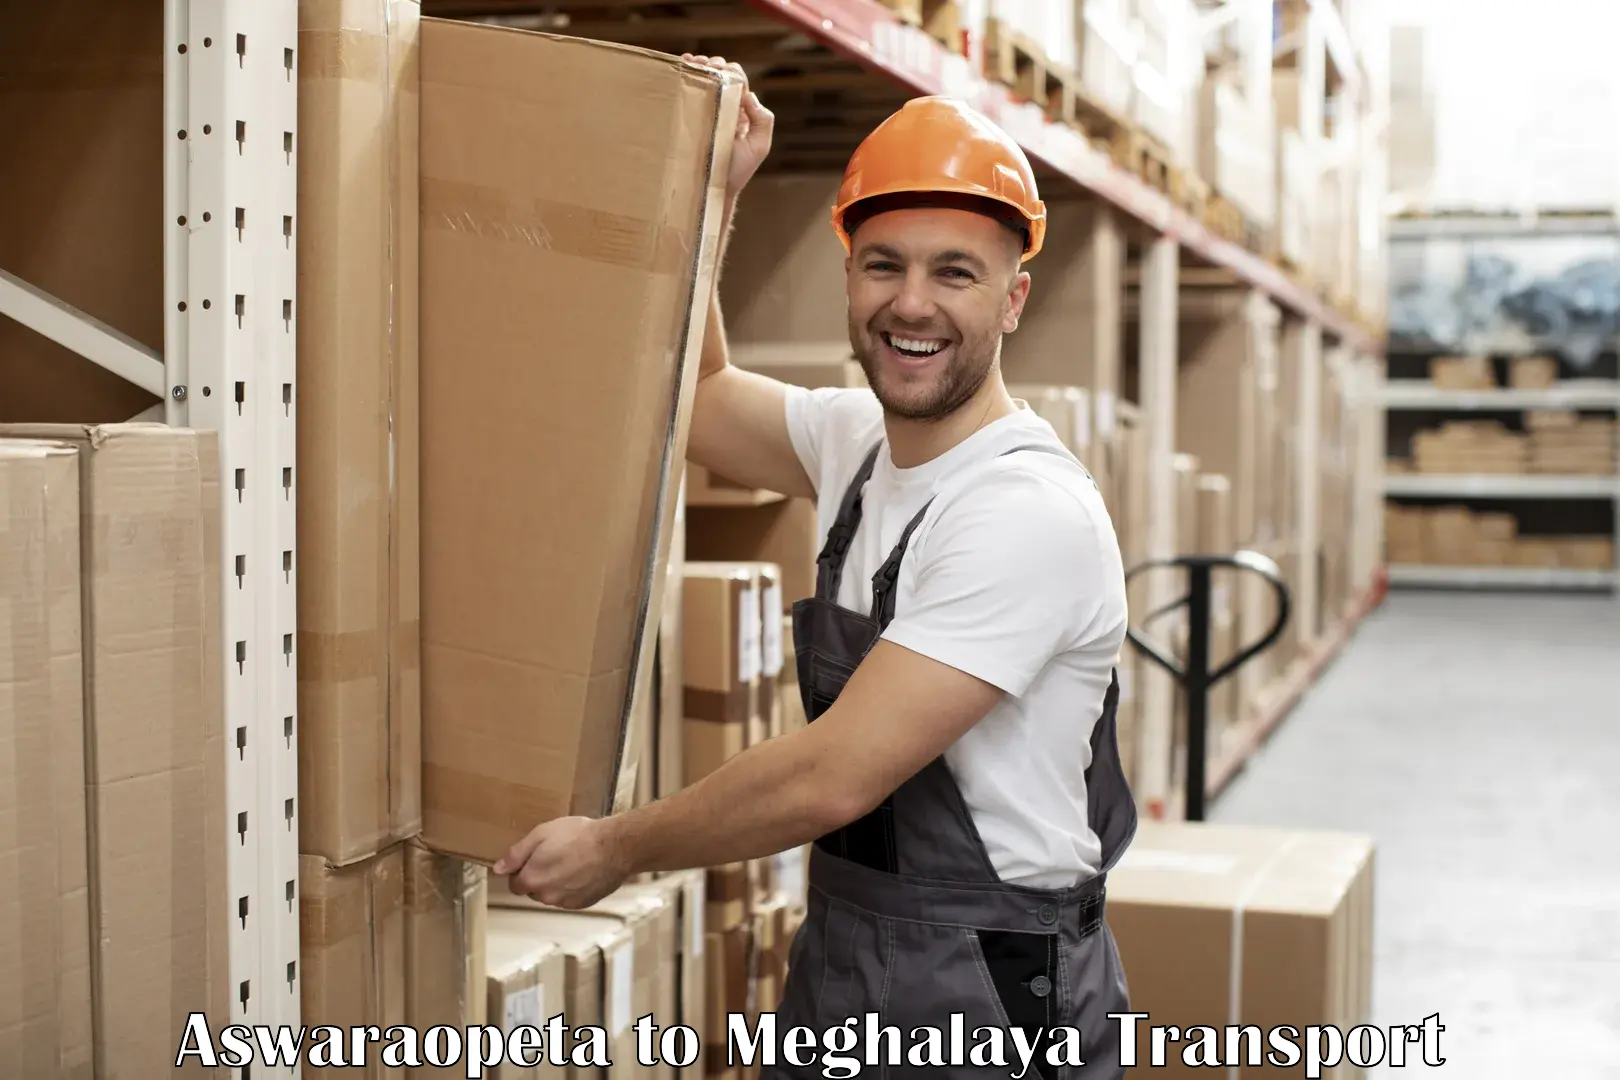 Lorry transport service Aswaraopeta to Meghalaya